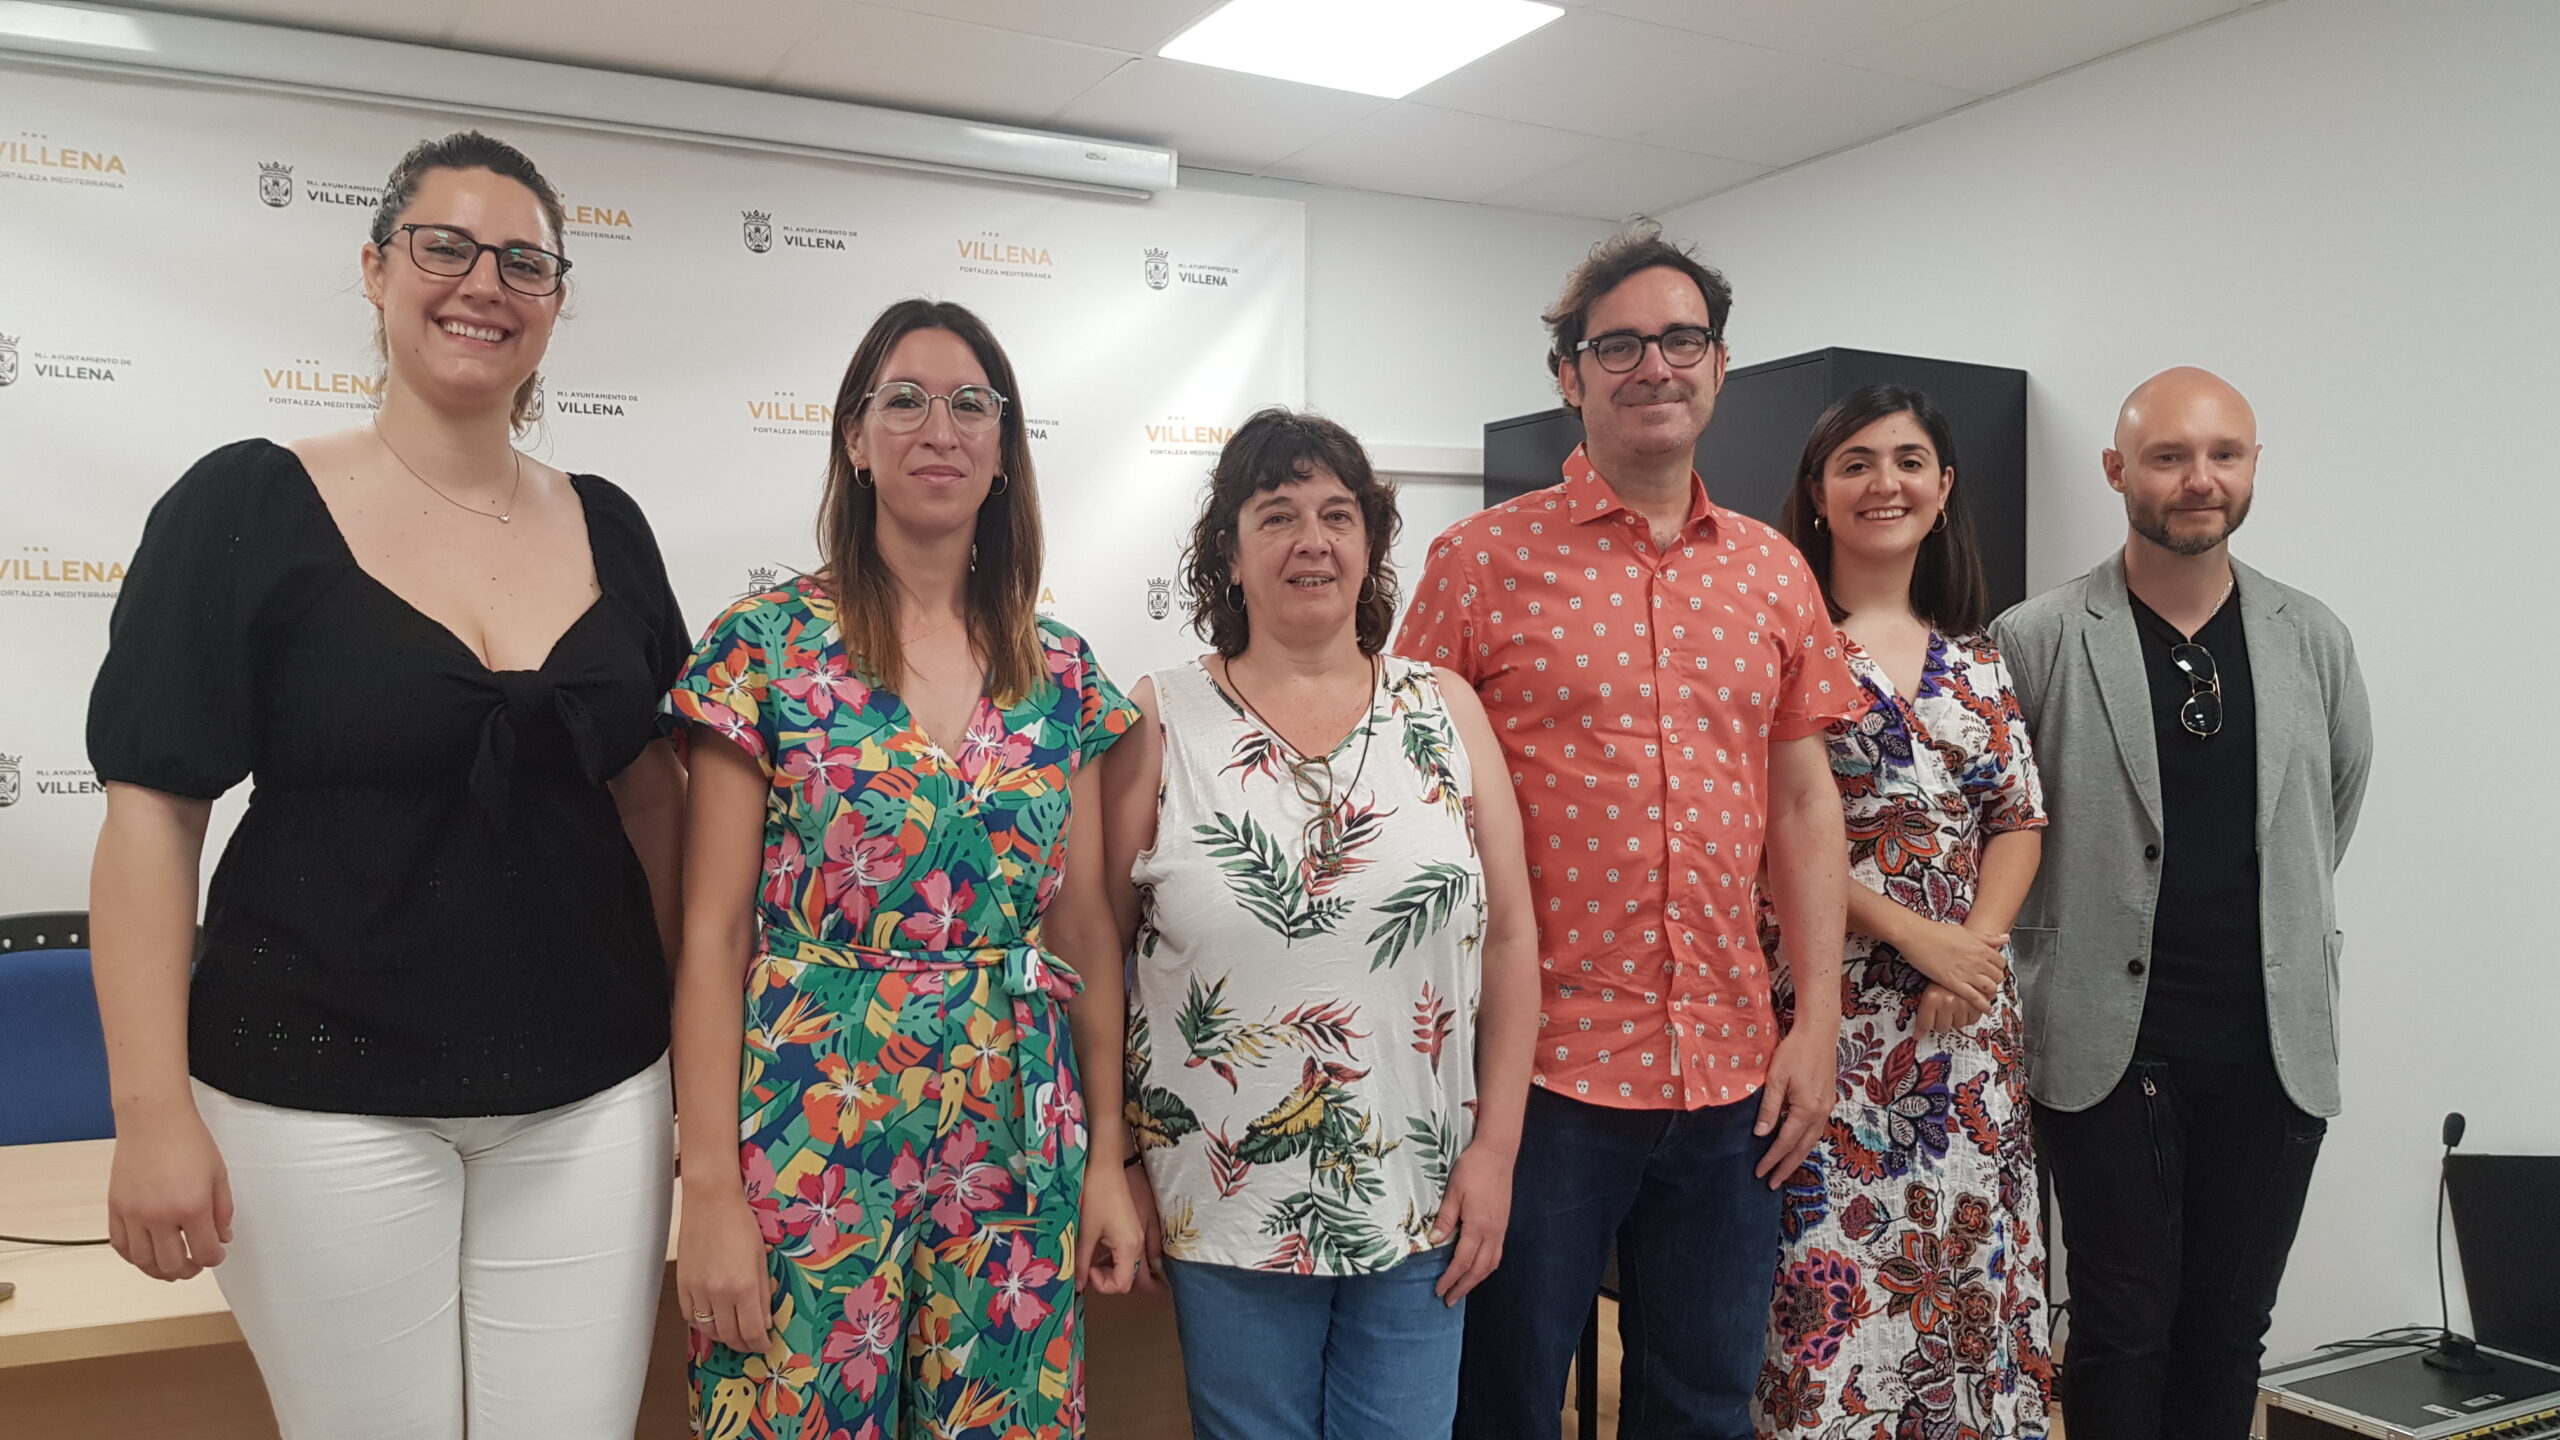 La Universidad de Alicante impartirá 3 Cursos de Verano en Villena relacionados con educación y música